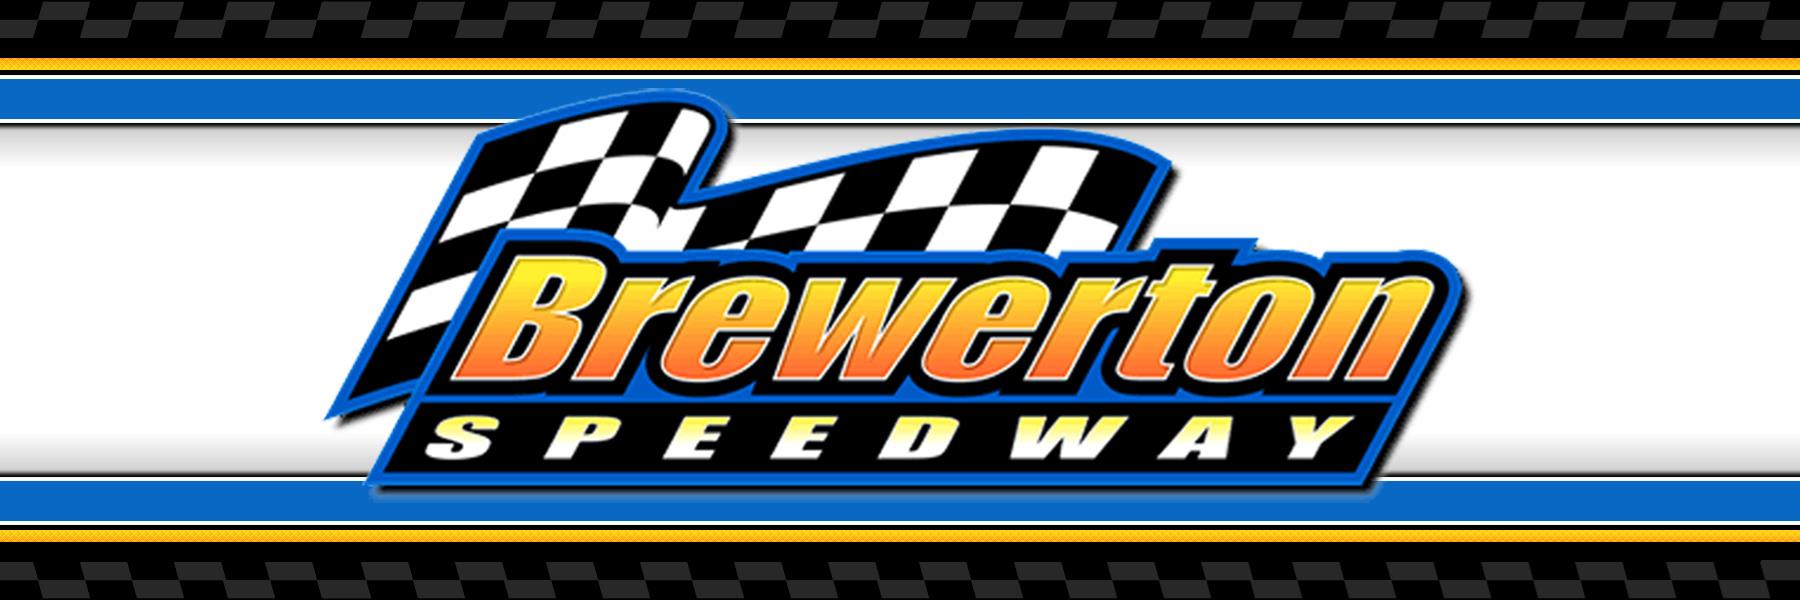 8/5/2022 - Brewerton Speedway